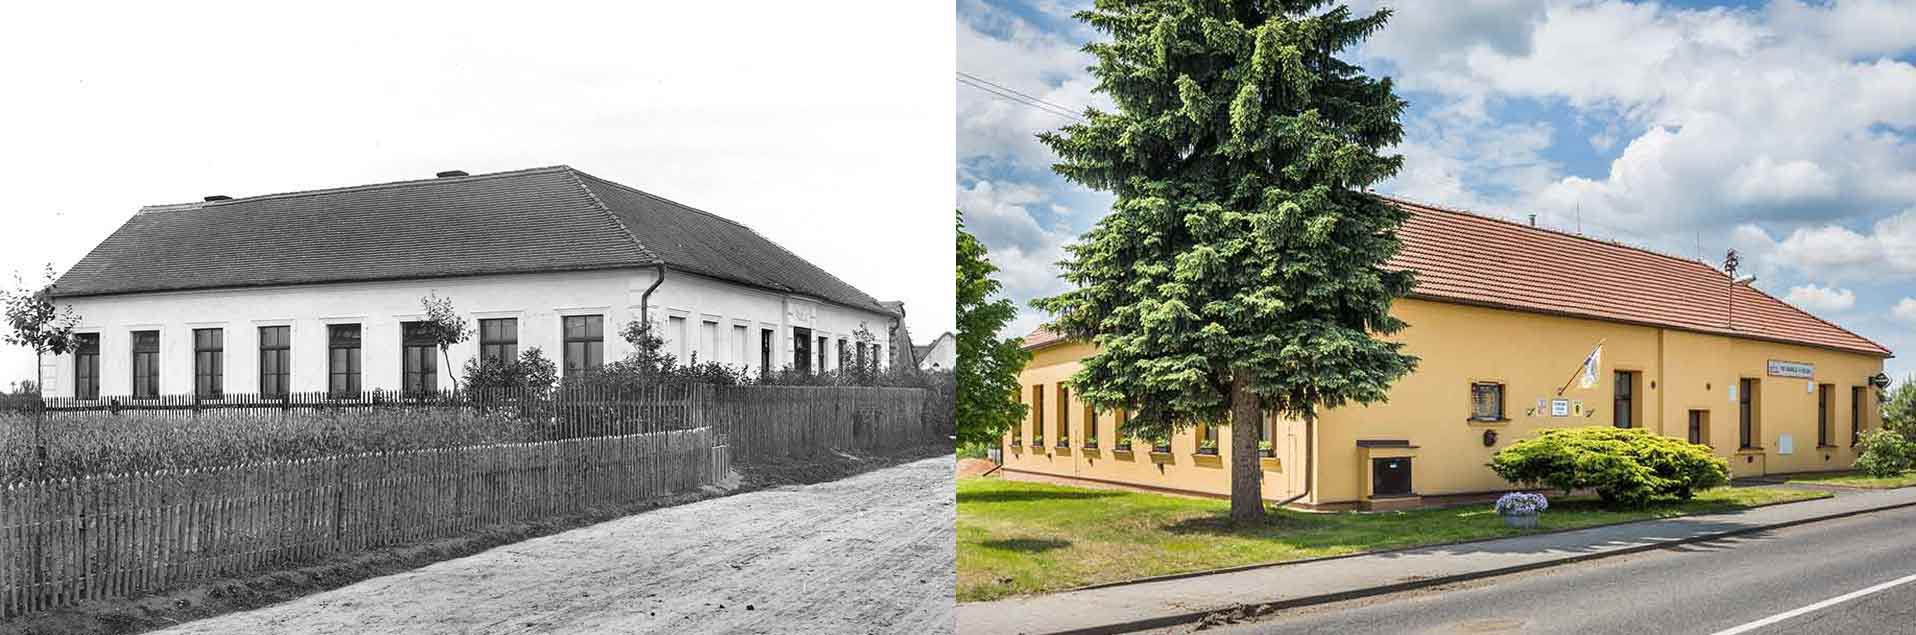 Voleč, obecná škola, postavena 1896 a dnešní pohled